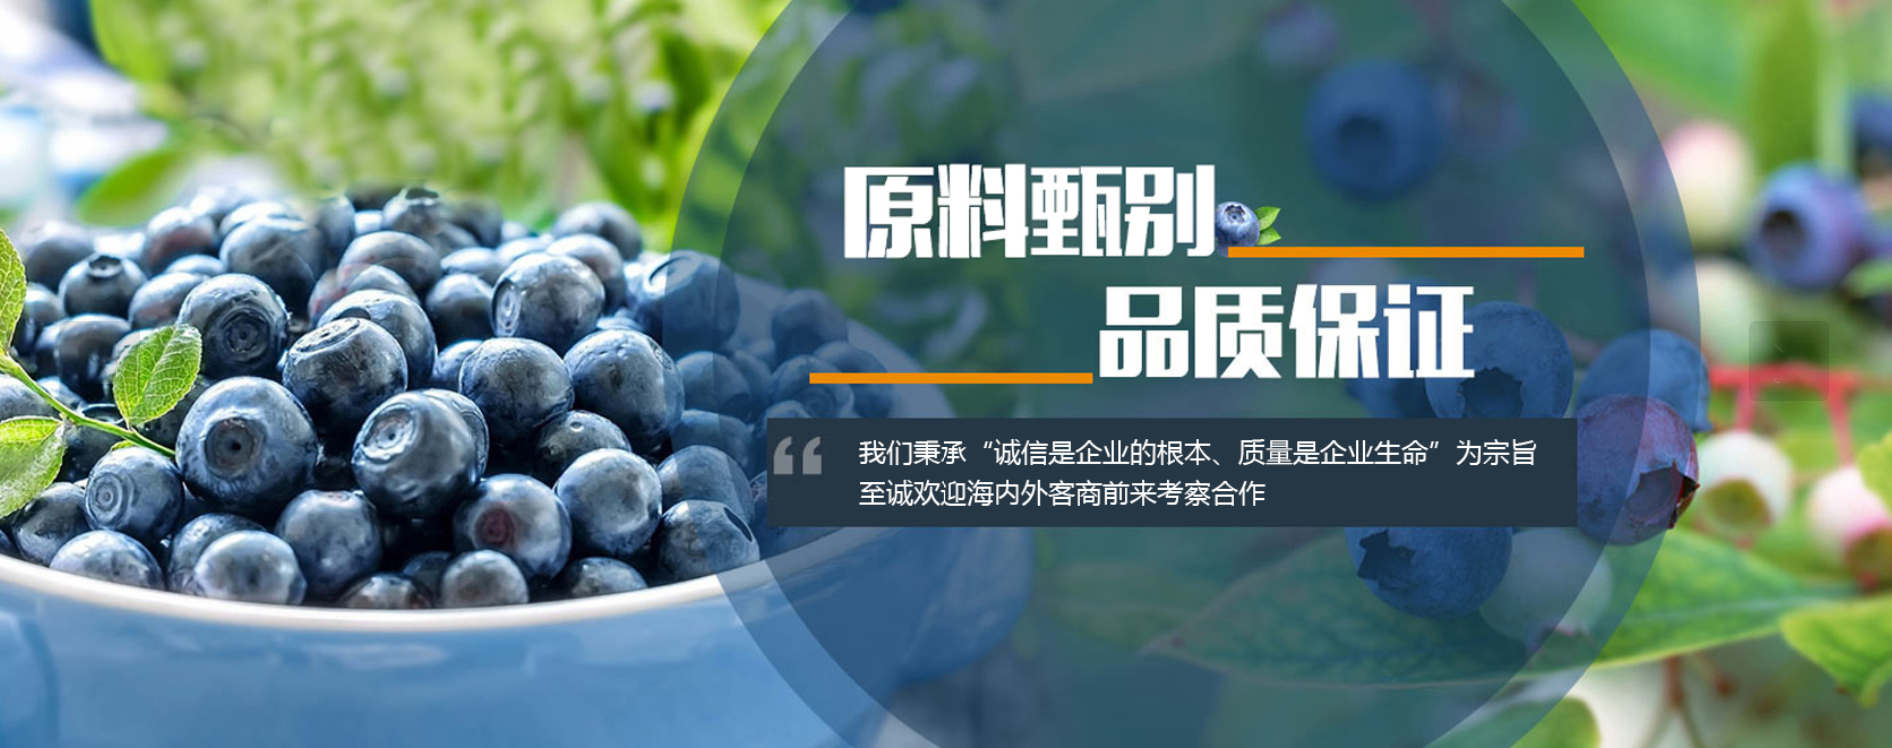 Laiyang Shunxing Food Co., Ltd